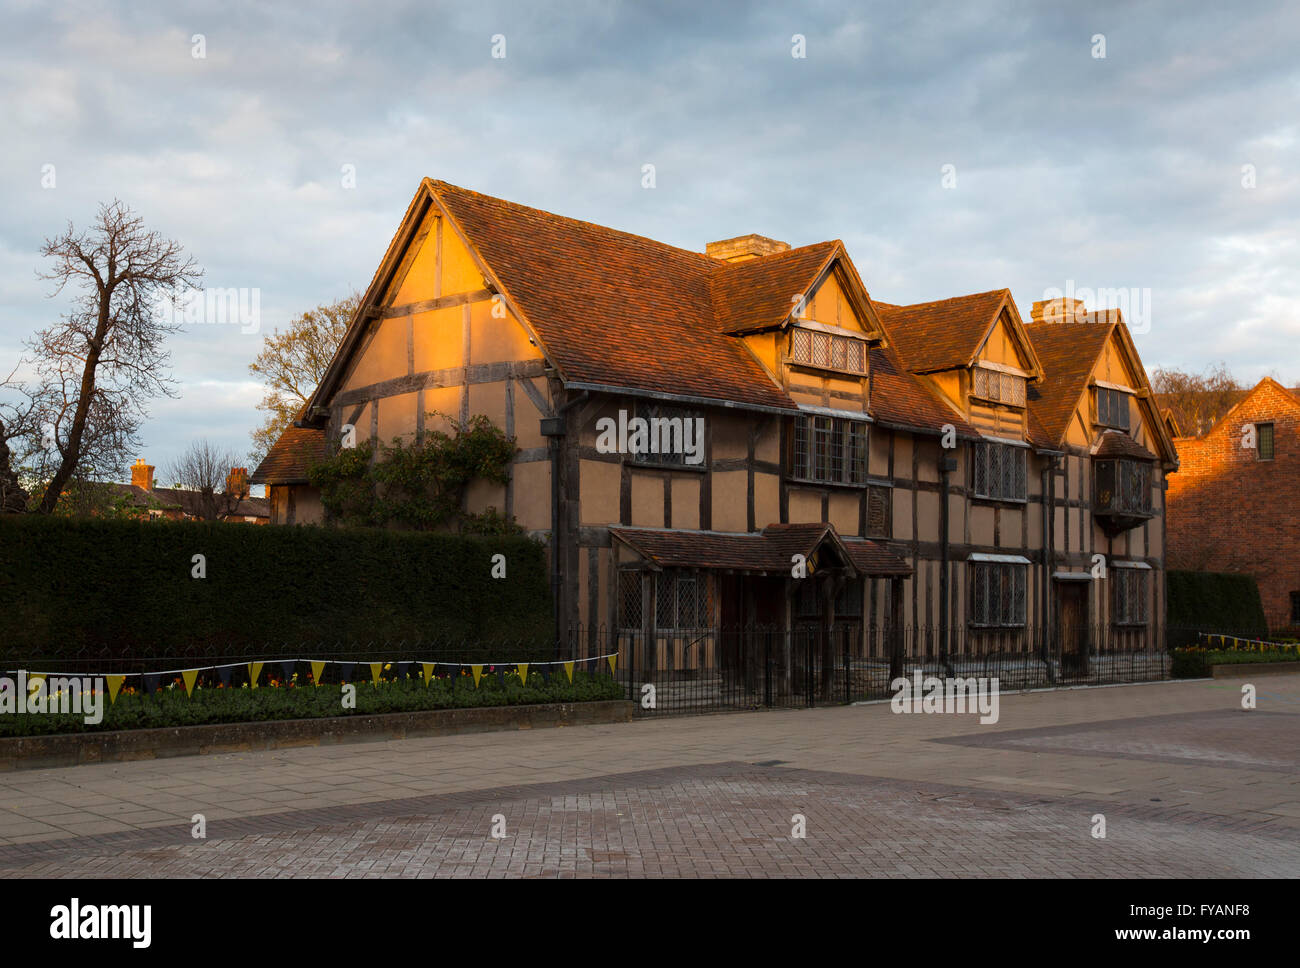 El lugar de nacimiento de Shakespeare capturados por la puesta de sol en Stratford-upon-Avon, Reino Unido, en el día del 400º aniversario de su muerte Foto de stock